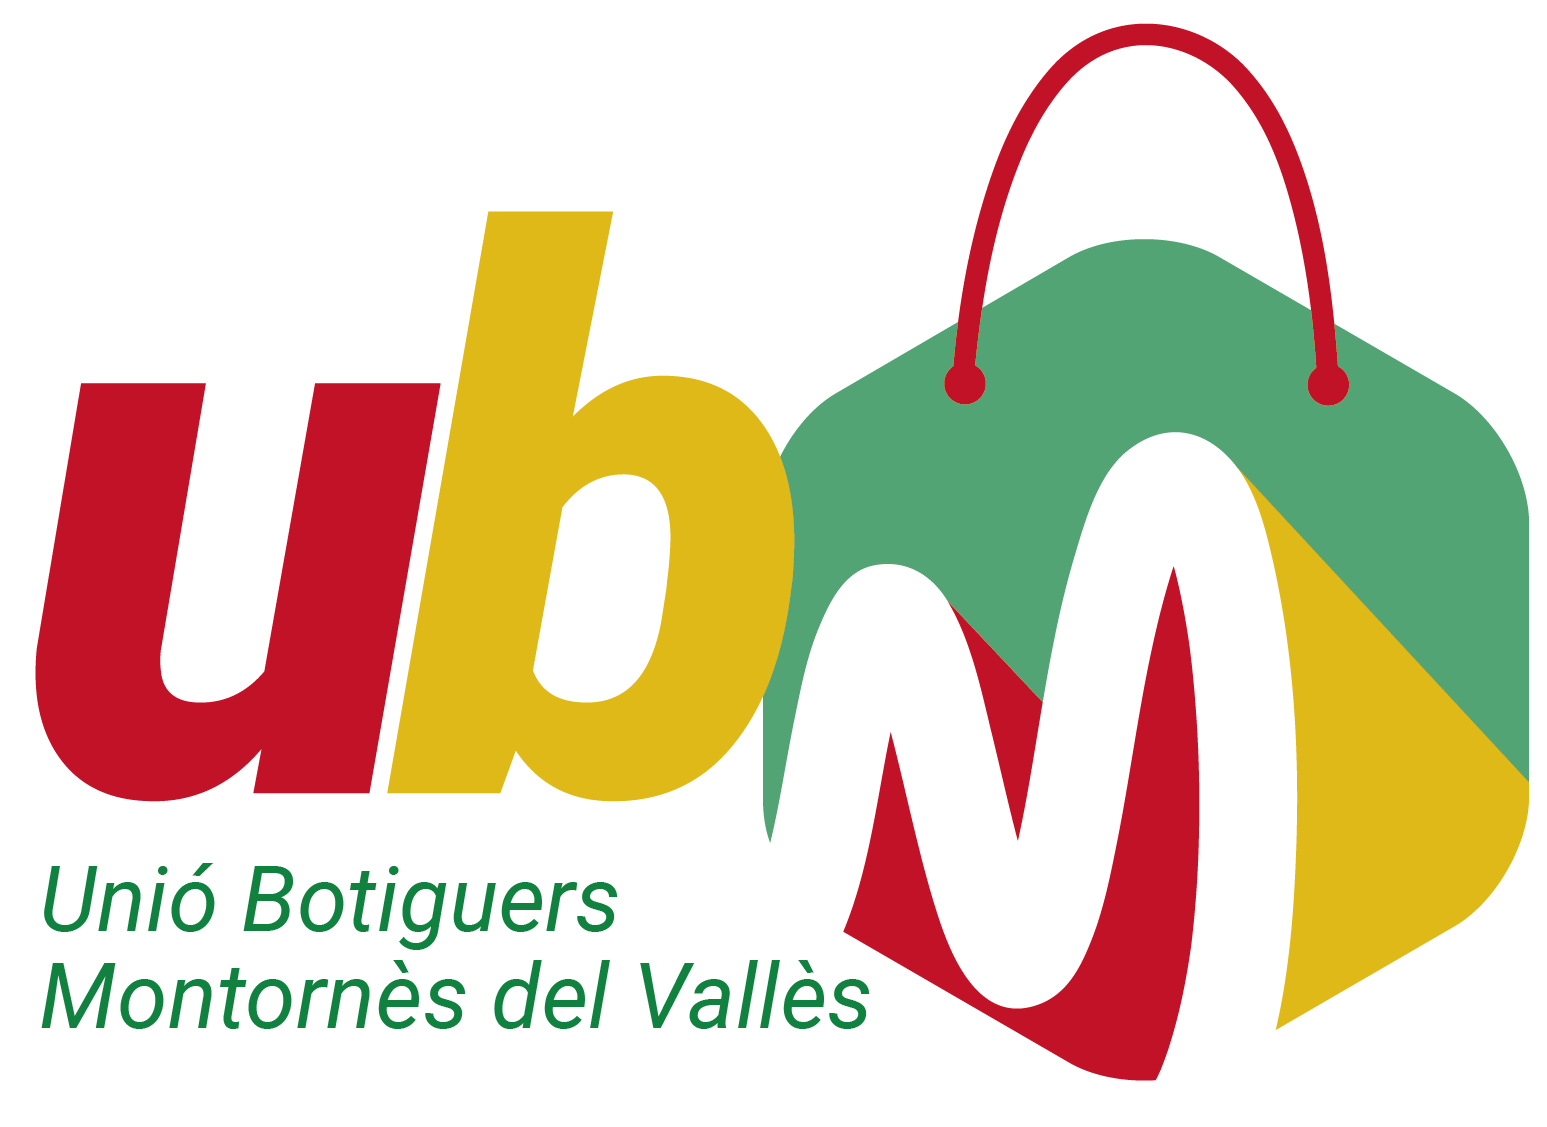 Uni de Botiguers de Montorns del Valls